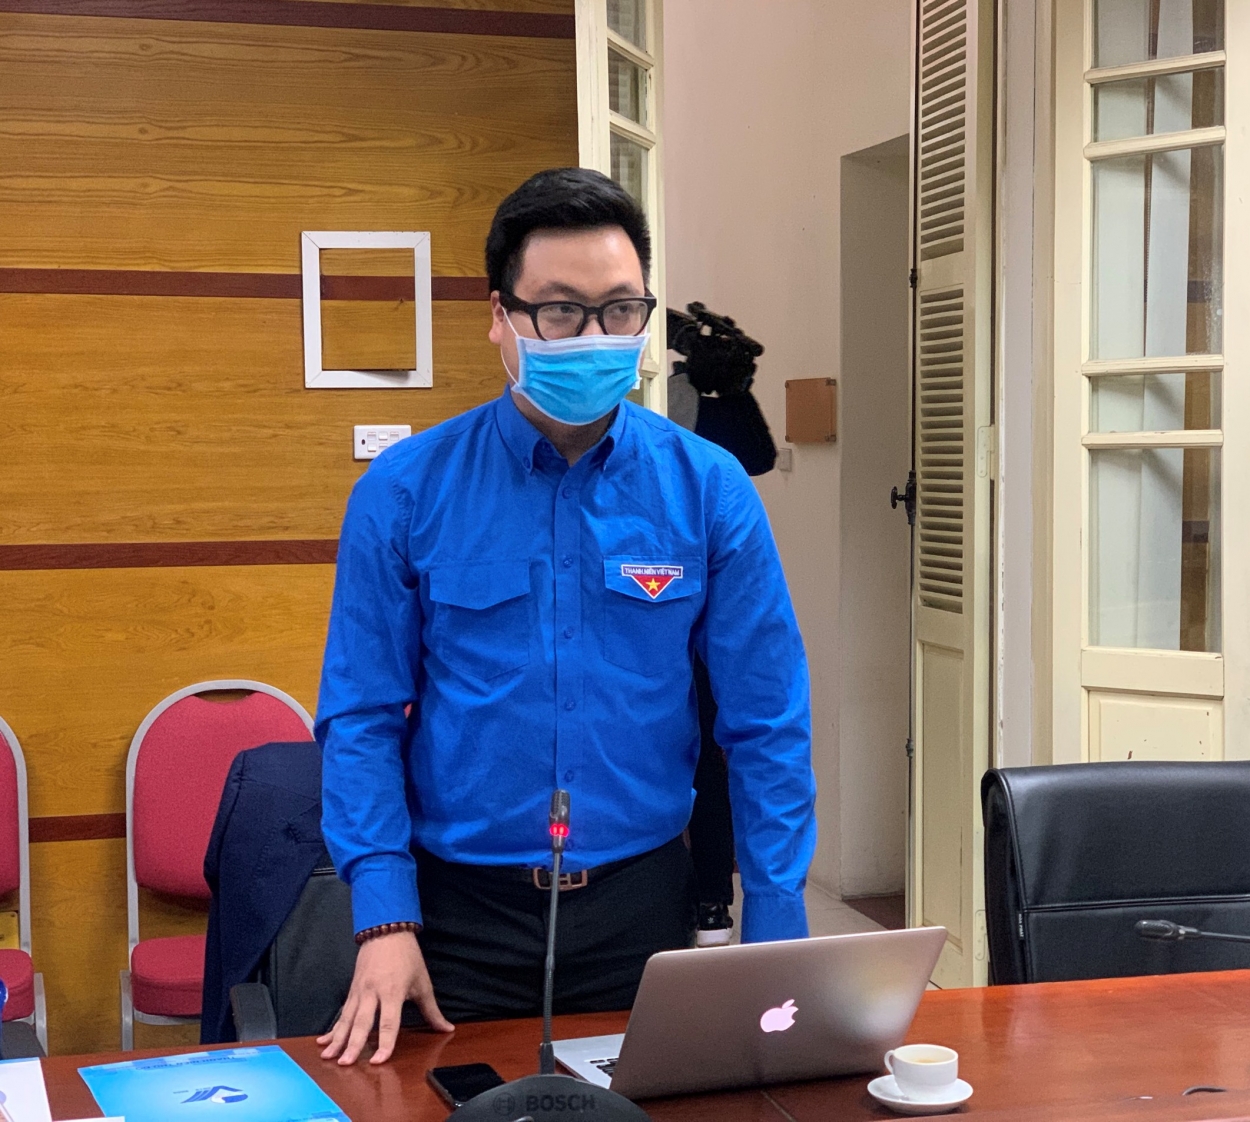 Đồng chí Trần Quang Hưng, Phó Bí thư Thành đoàn Hà Nội, thông tin về chiến dịch 10.000 việc làm vì cộng đồng chống thất nghiệp mùa dịch